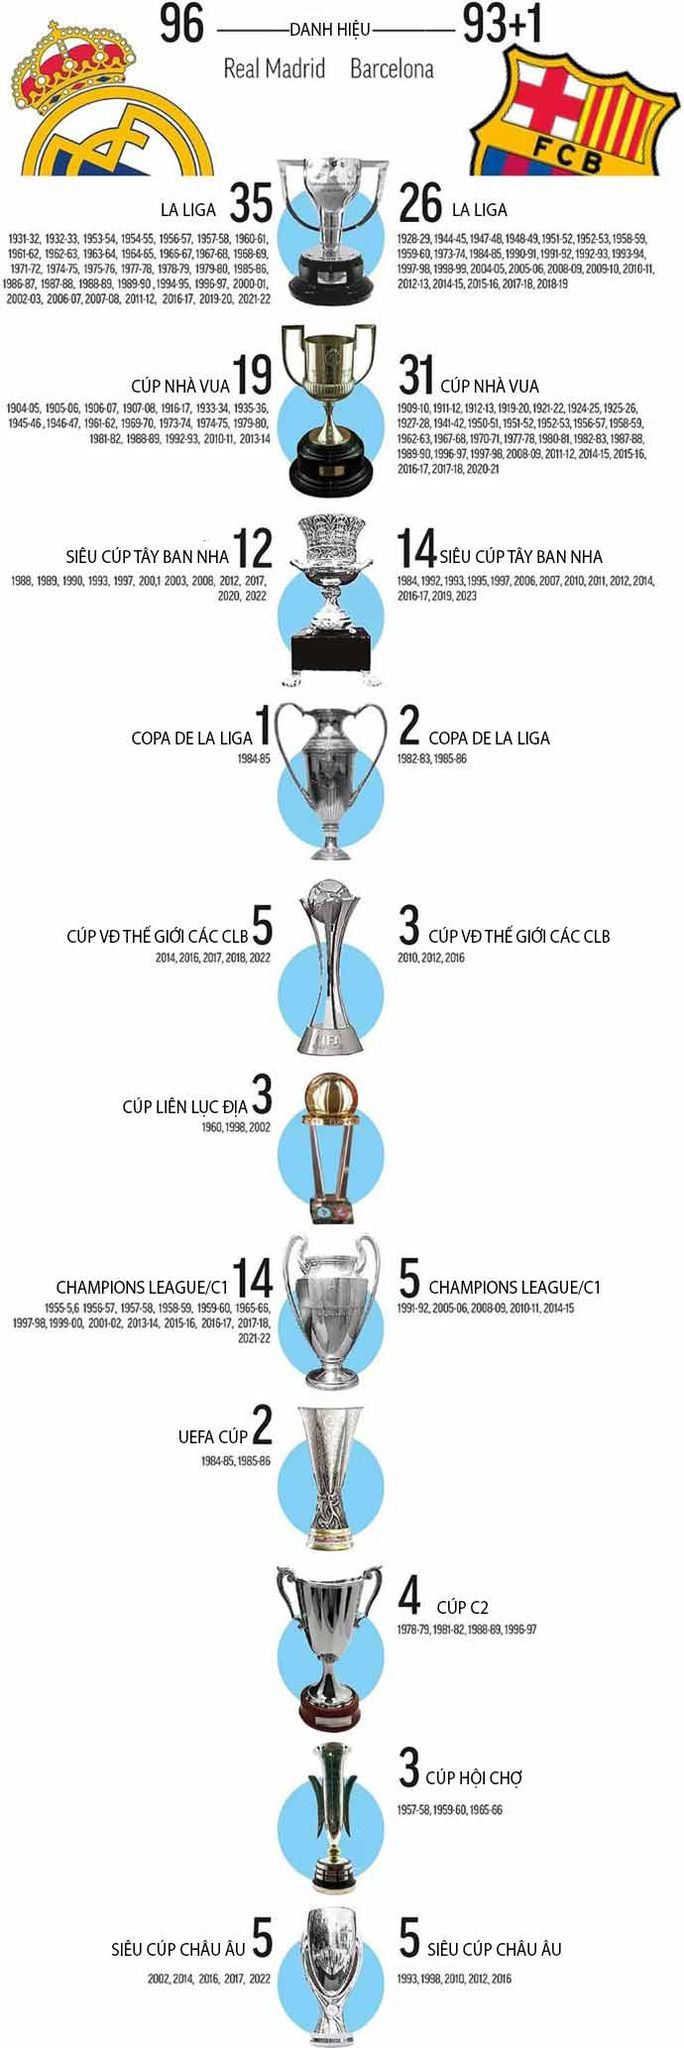 Cục diện cuộc đua danh hiệu hiện tại giữa Real Madrid và Barca